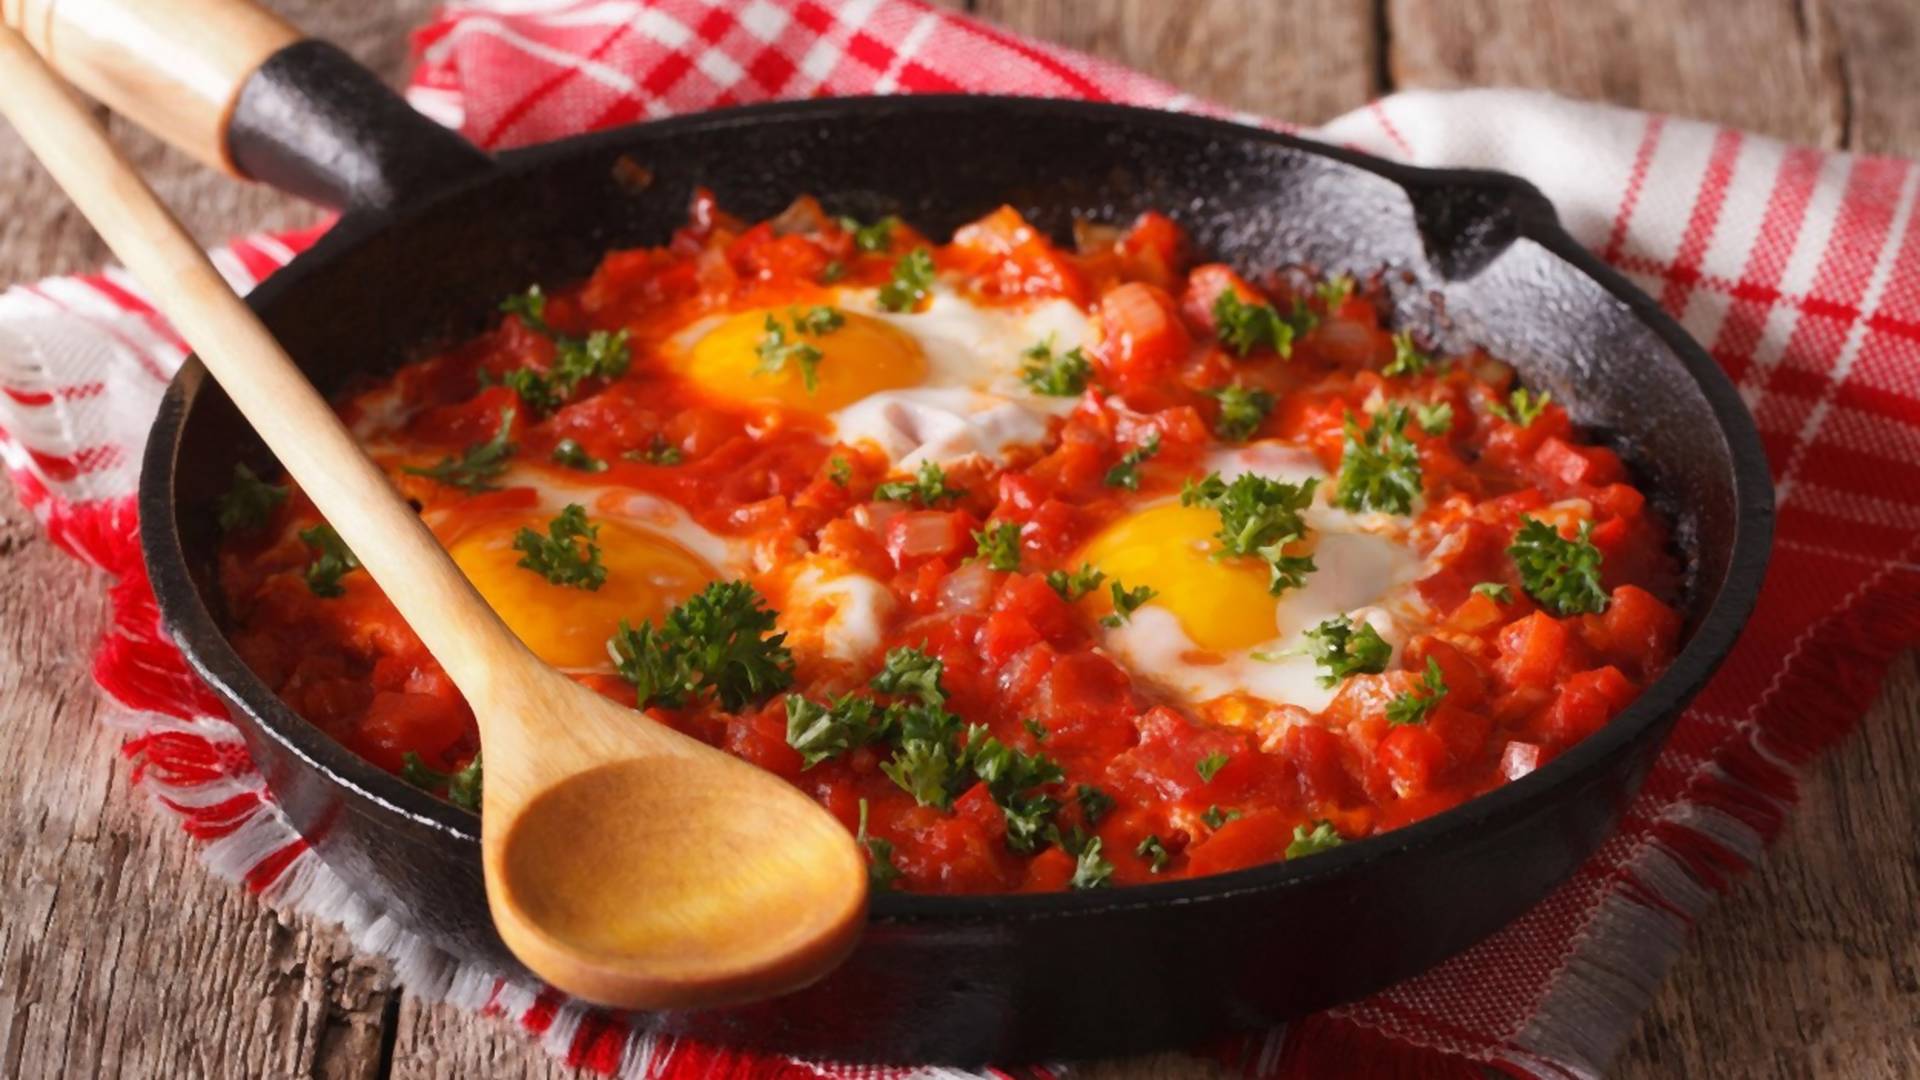 Izraelski način pripreme jaja će vas oduševiti - neka vam ovaj recept bude ideja za doručak